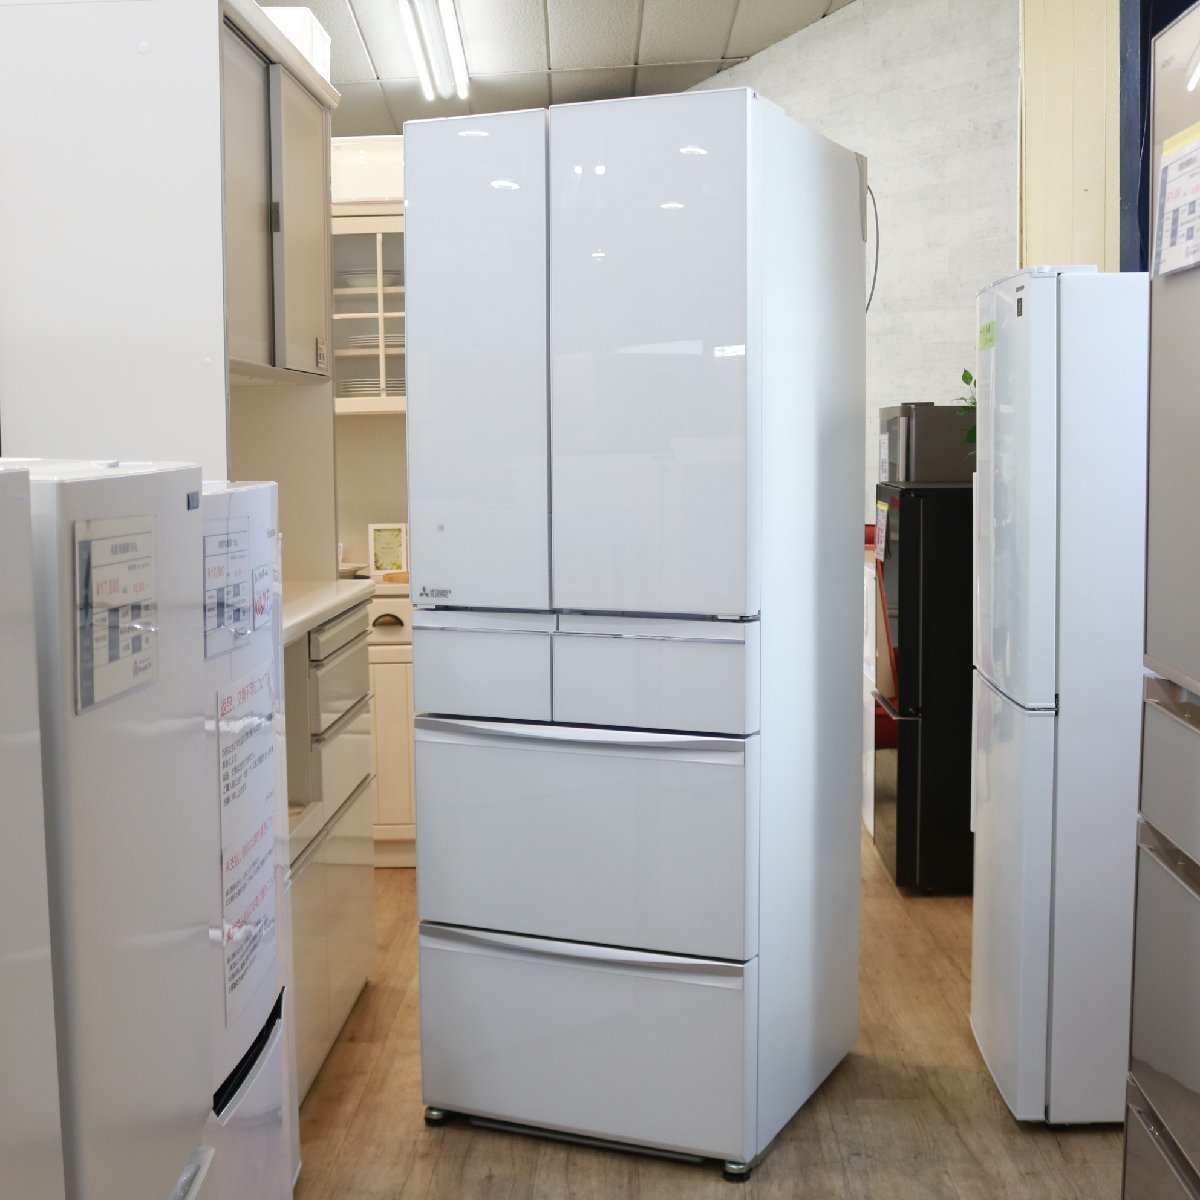 東京都調布市にて 三菱 ノンフロン冷凍冷蔵庫 MR-MX50F-W 2020年製 を出張買取させて頂きました。